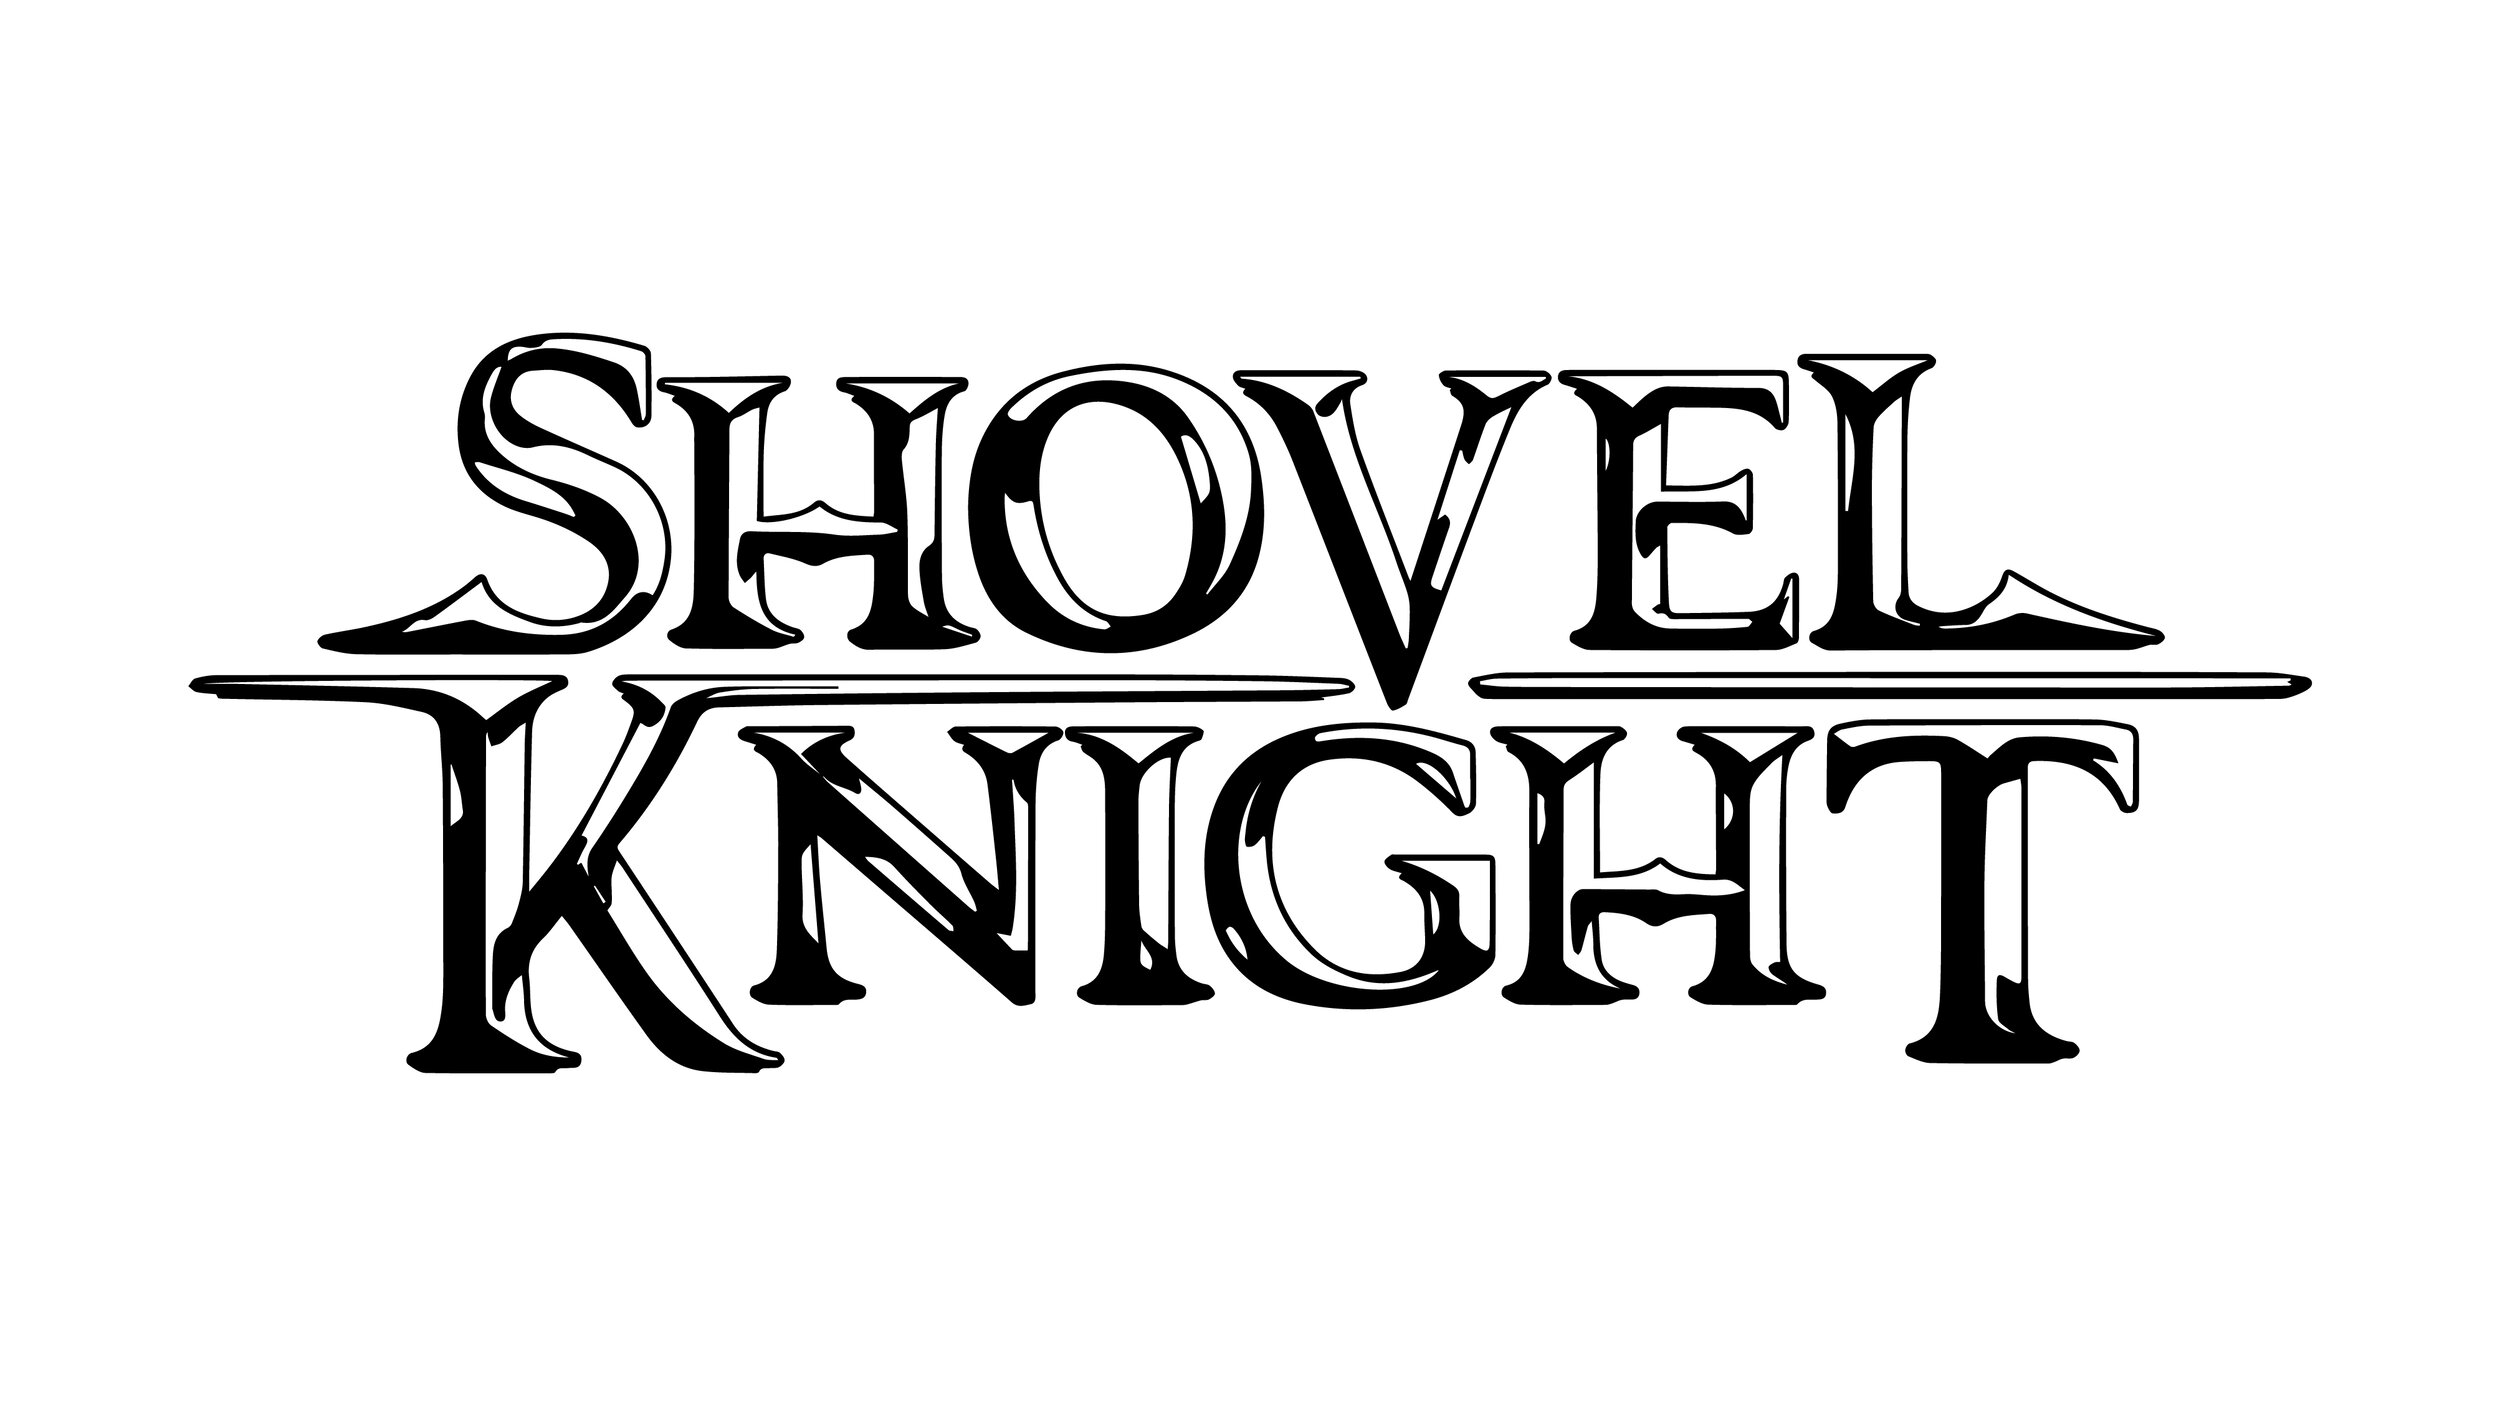 Logo_Shovel_Knight.jpg